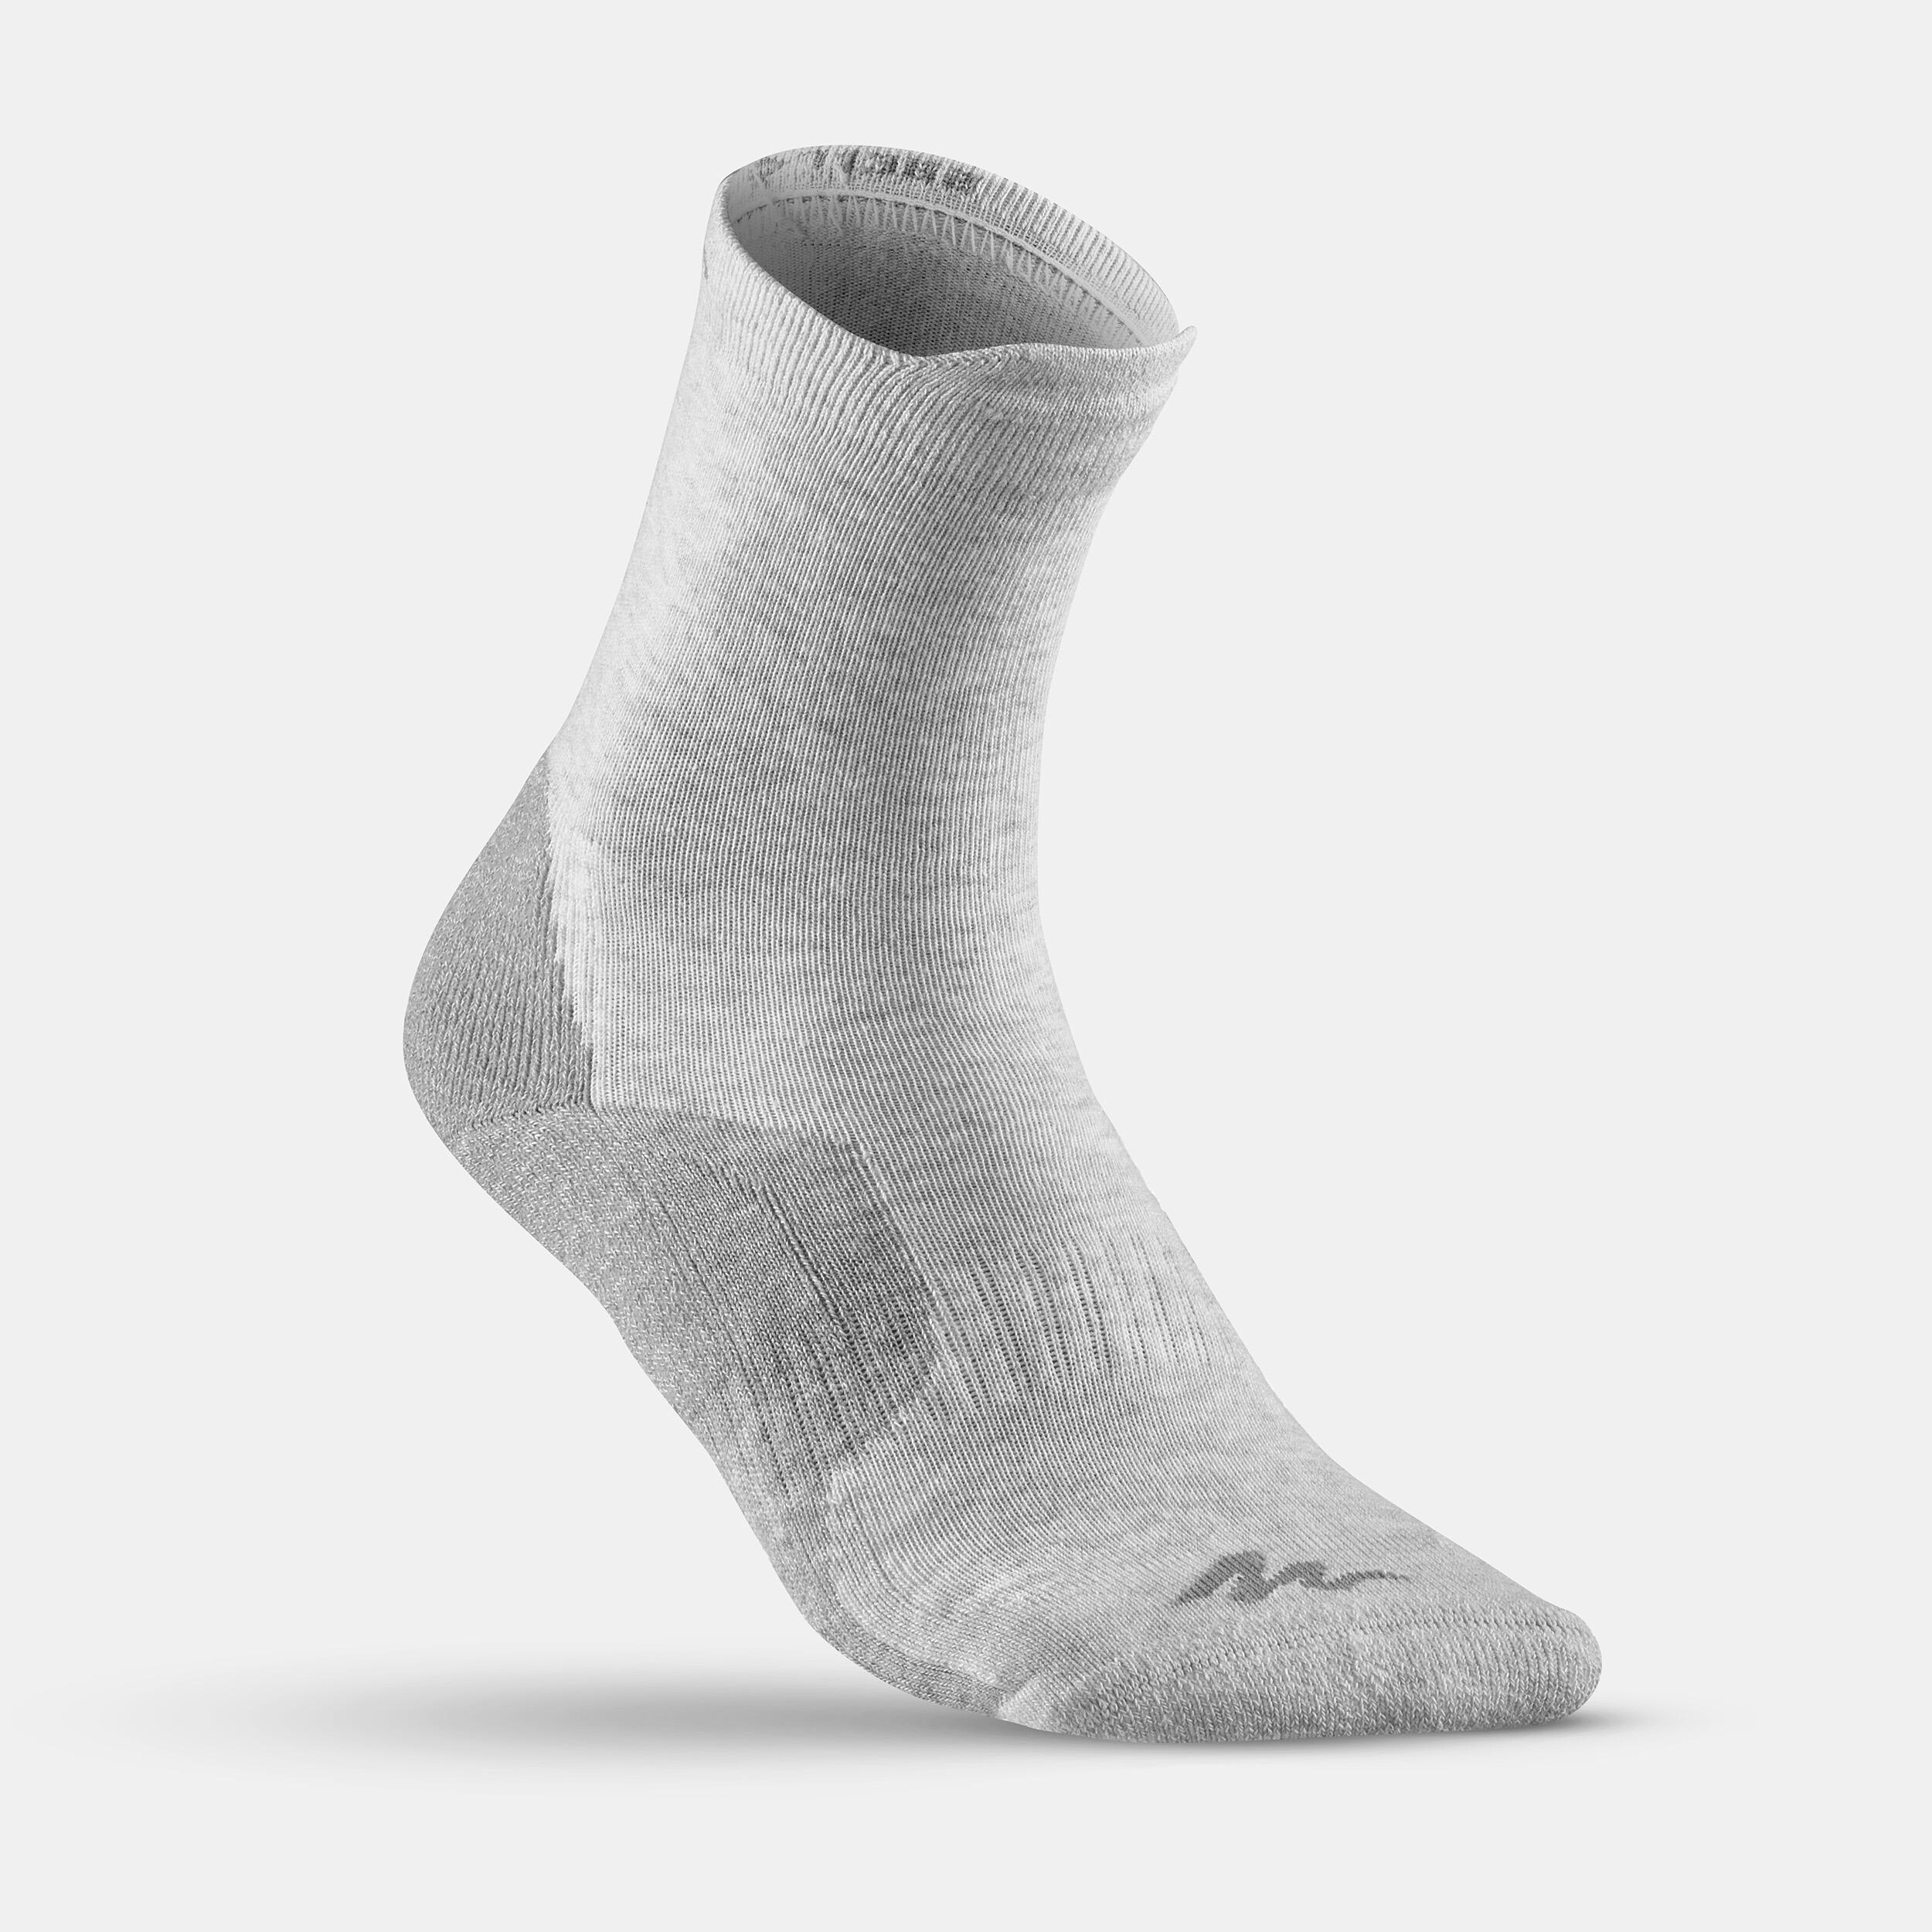 Kid’s High-Top Walking Socks 2 Pairs Crossocks Black Grey 4/9